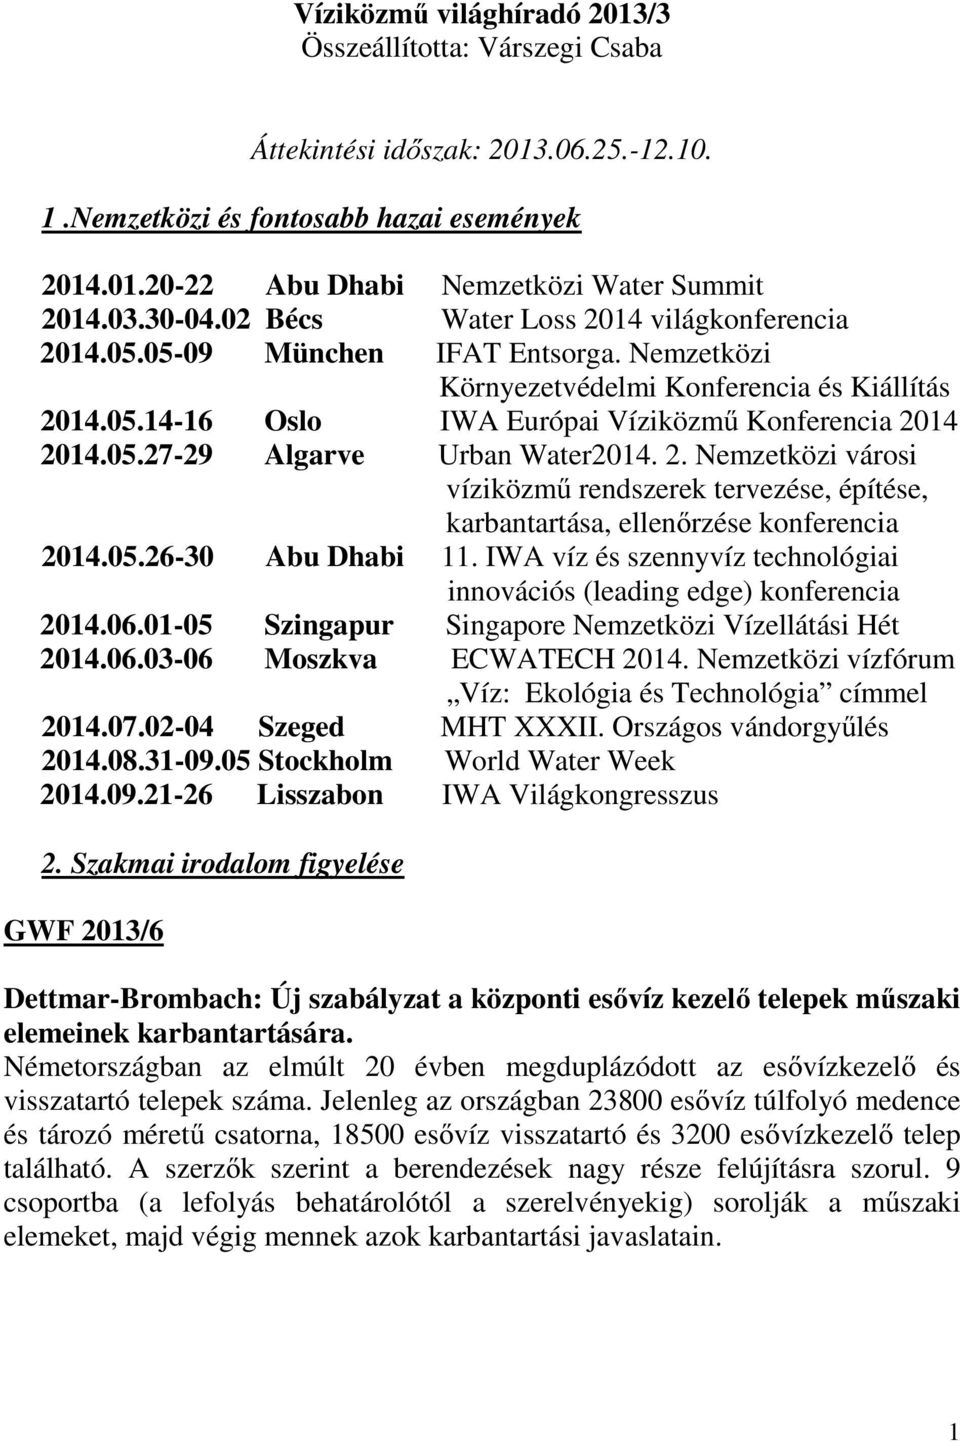 05.27-29 Algarve Urban Water2014. 2. Nemzetközi városi víziközmű rendszerek tervezése, építése, karbantartása, ellenőrzése konferencia 2014.05.26-30 Abu Dhabi 11.